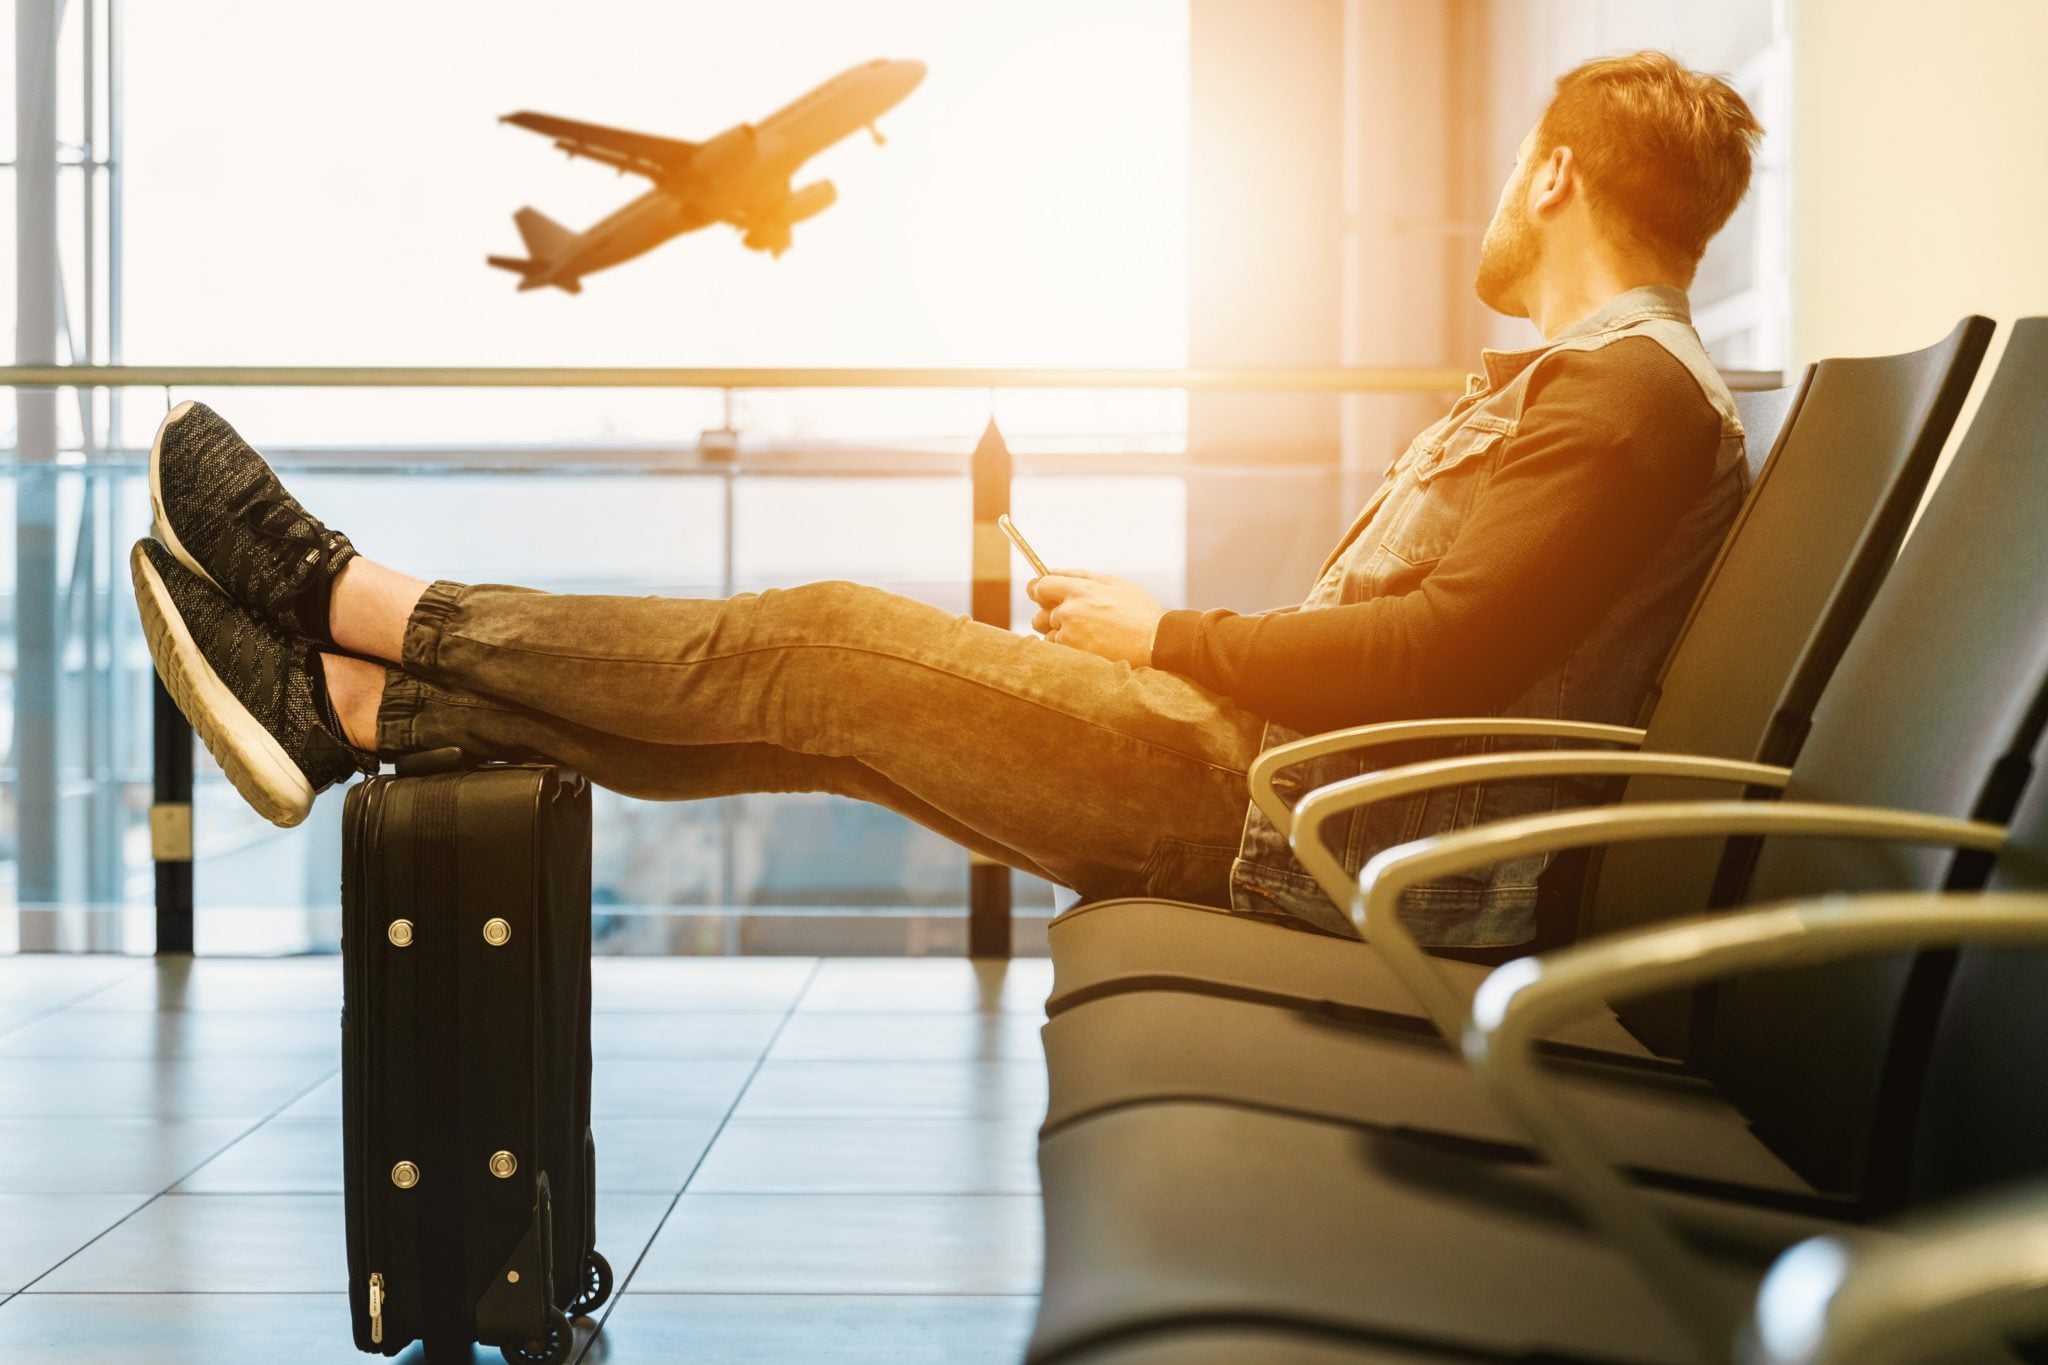 Chłopak na lotnisku w hali odlotów, siedzący i czekający na swój lot, trzyma nogi na walizce i obserwuje startujący samolot o zachodzie słońca